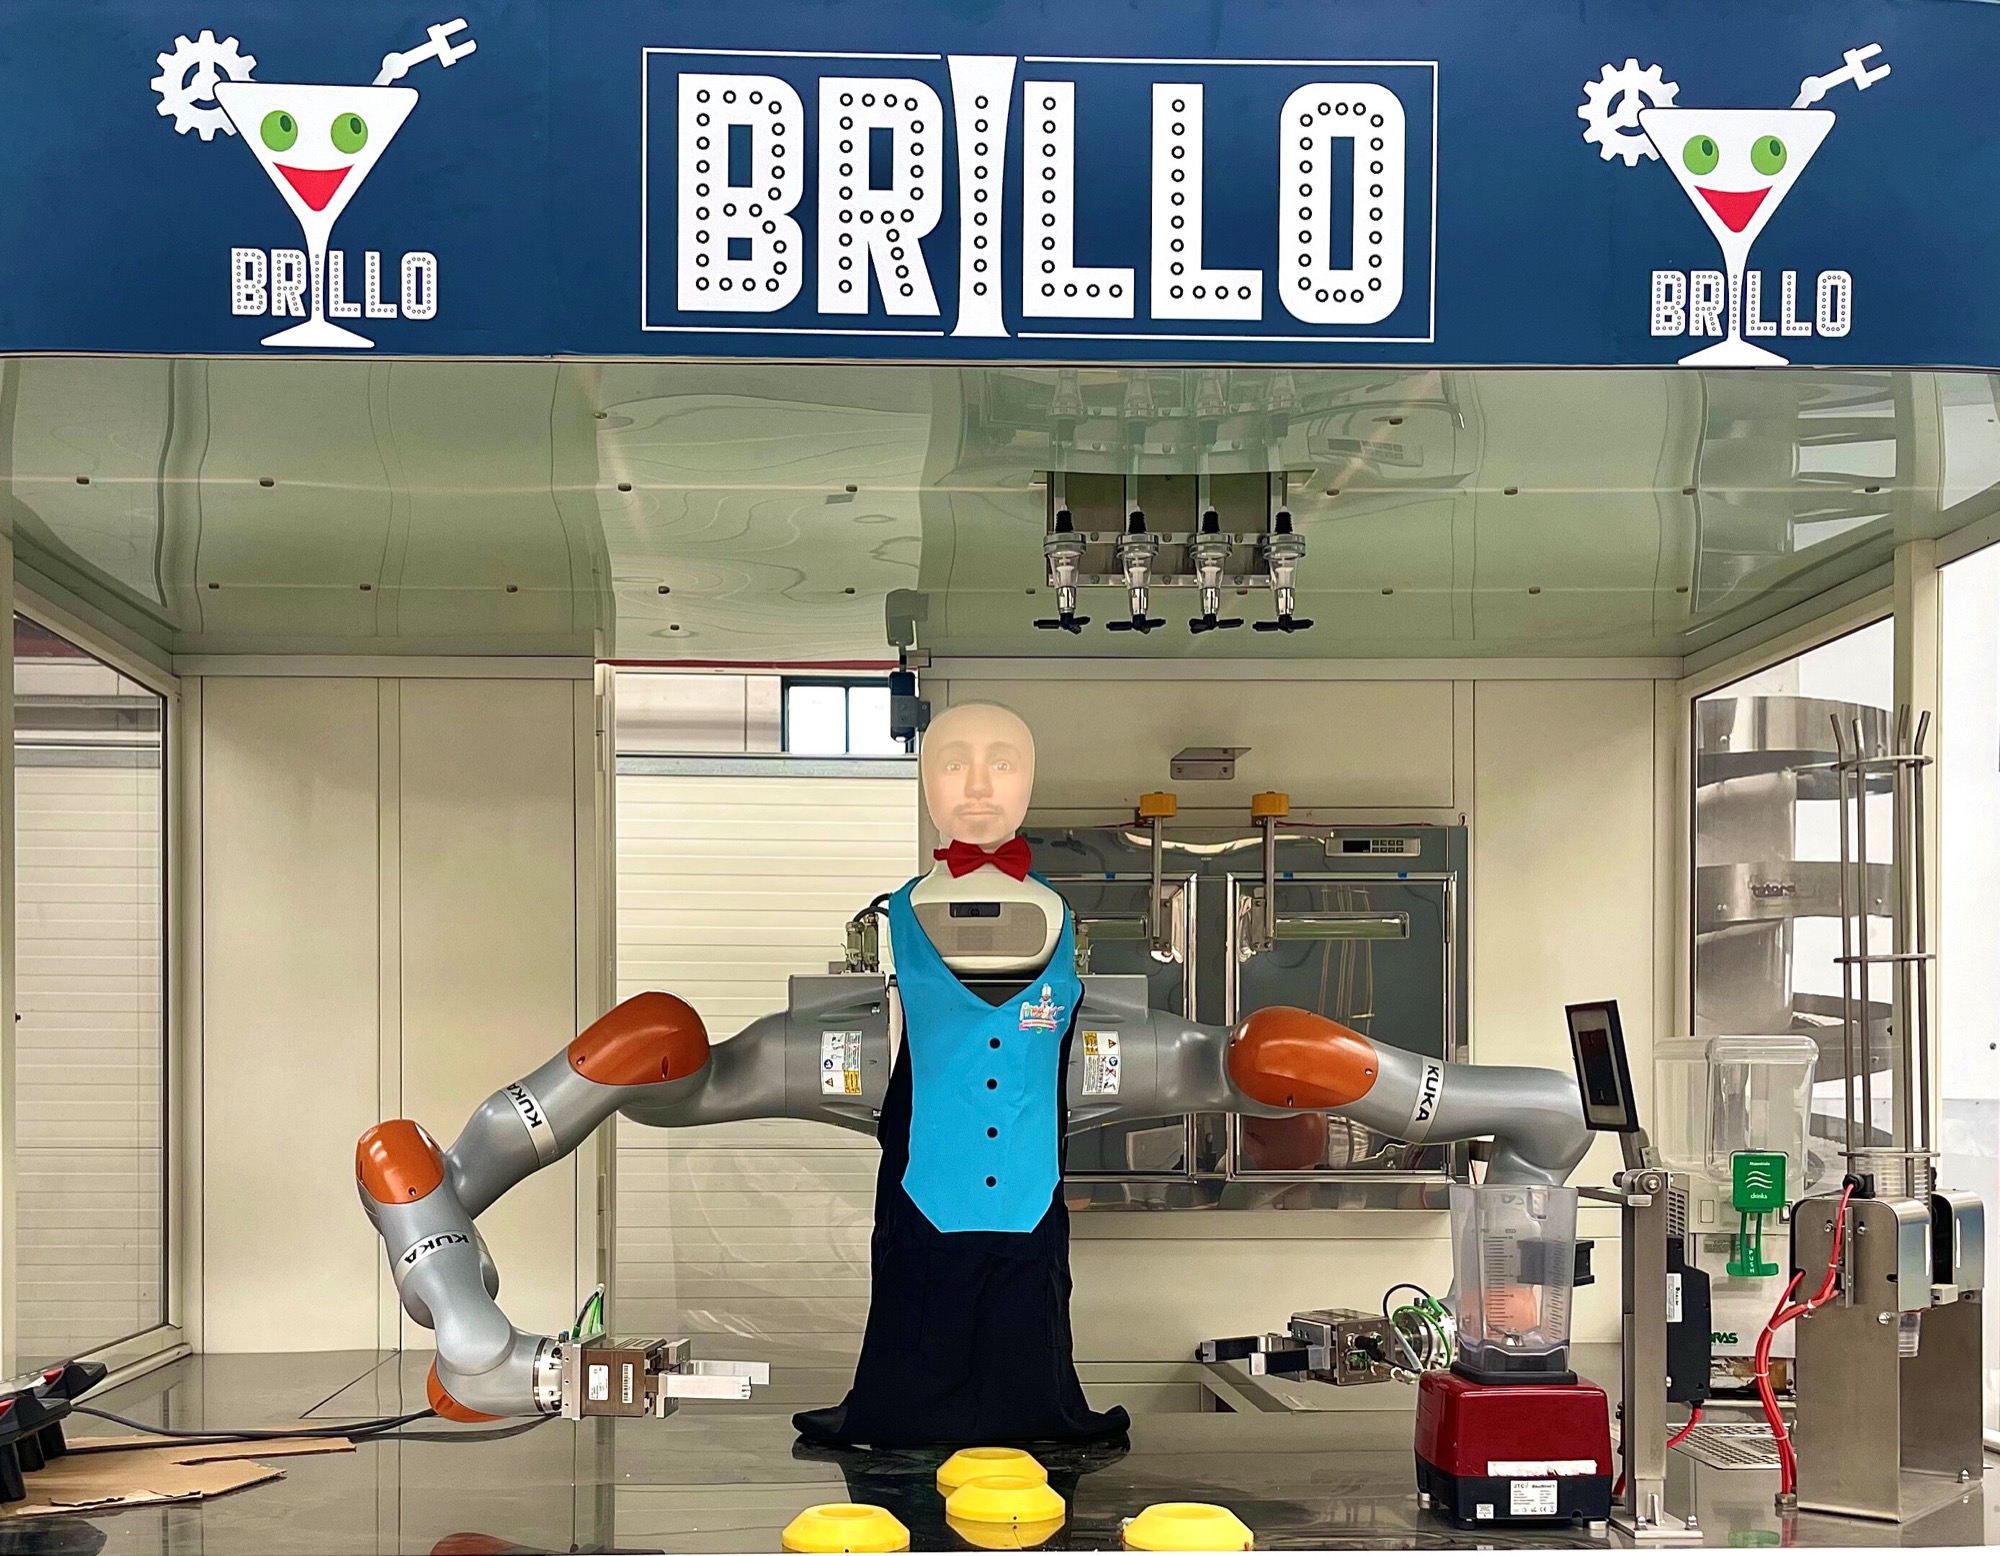 Brillo è un robot barman che ascolta i suoi clienti.  Scopri cosa vogliono i clienti per un drink e di cosa vogliono parlare.